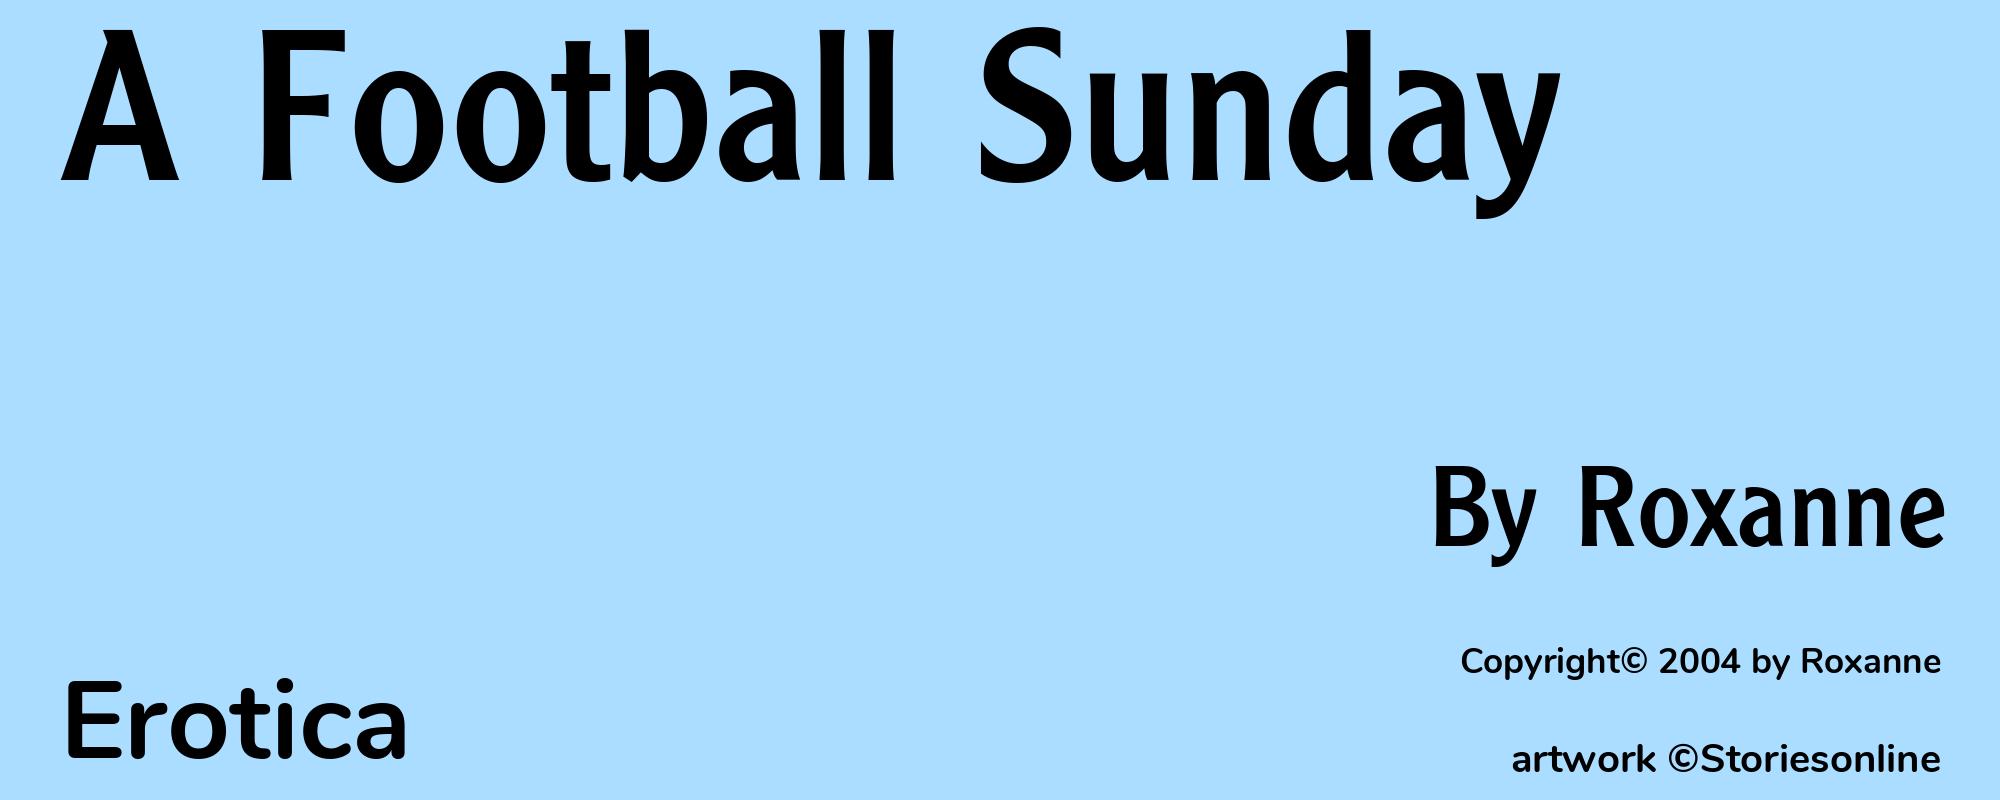 A Football Sunday - Cover